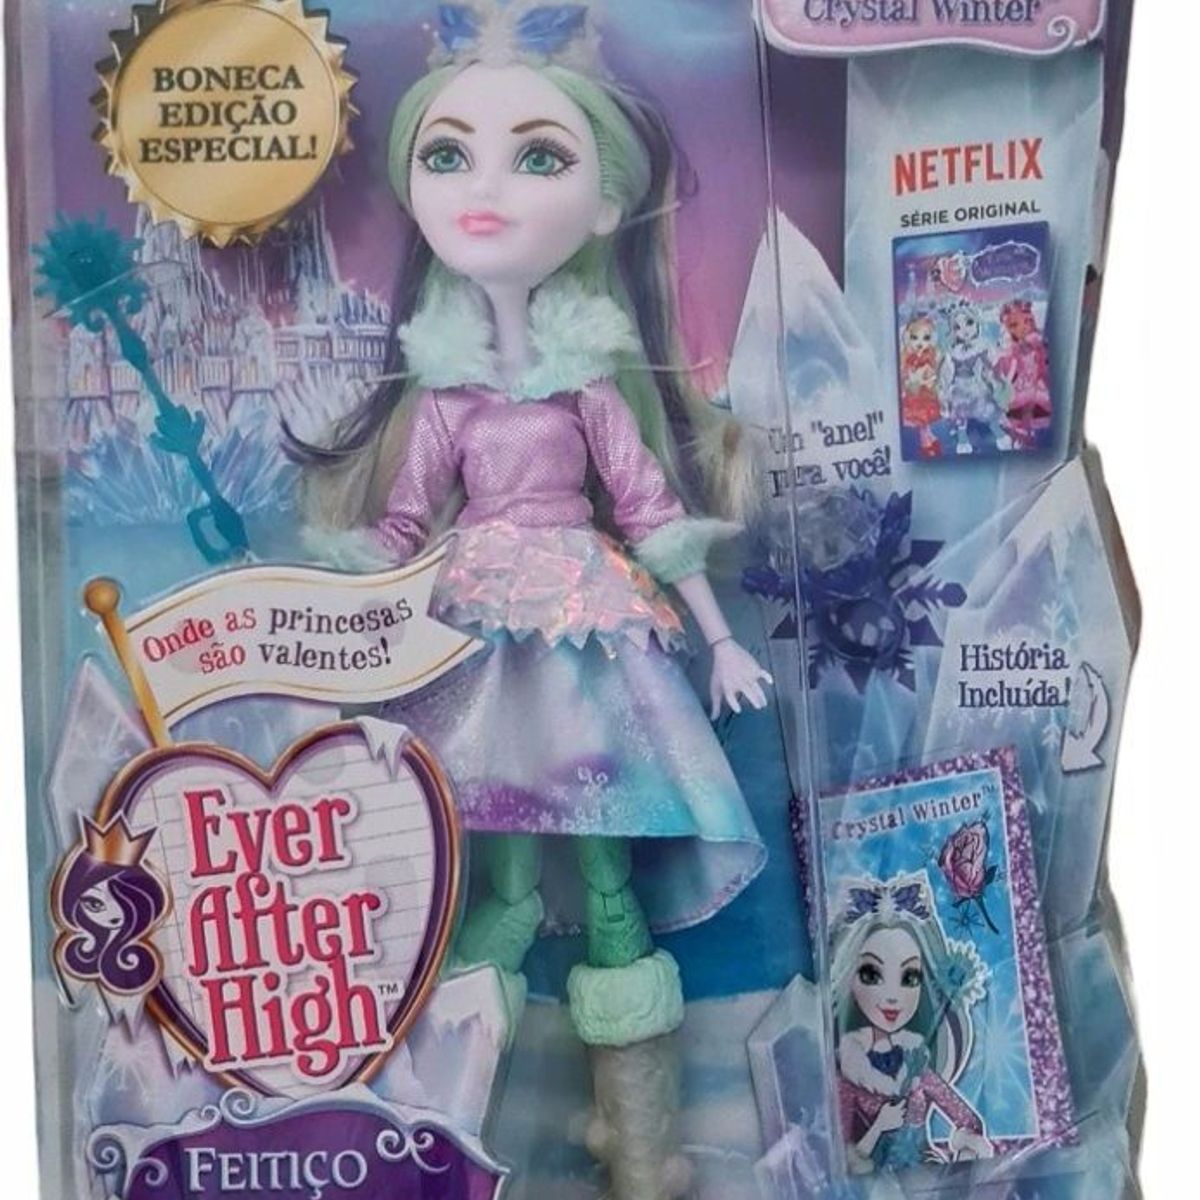 Boneca Ever After High Feitico Inverno Cristal - Mattel - A sua Loja de  Brinquedos, 10% Off no Boleto ou PIX